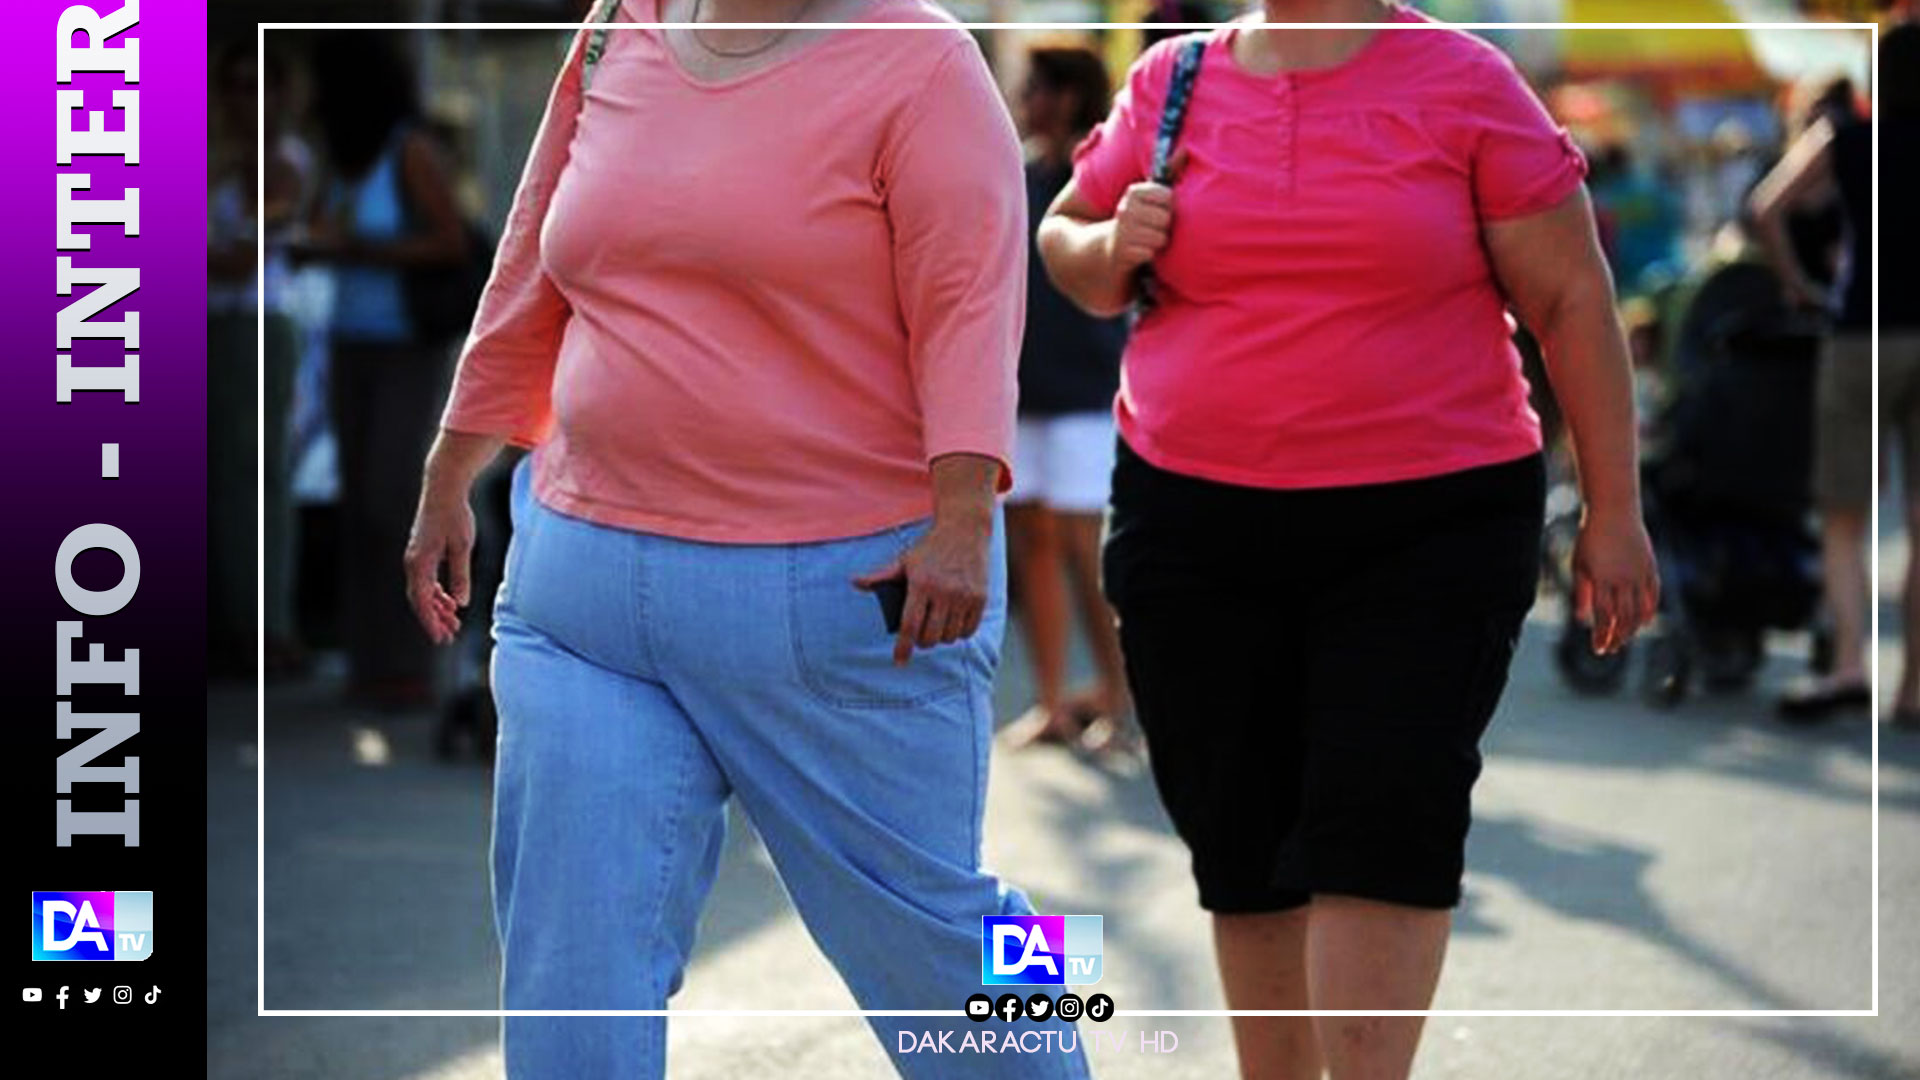 Près d’un milliard de personnes à travers le monde sont touchées par l'obésité, selon la revue médicale britannique The Lancet